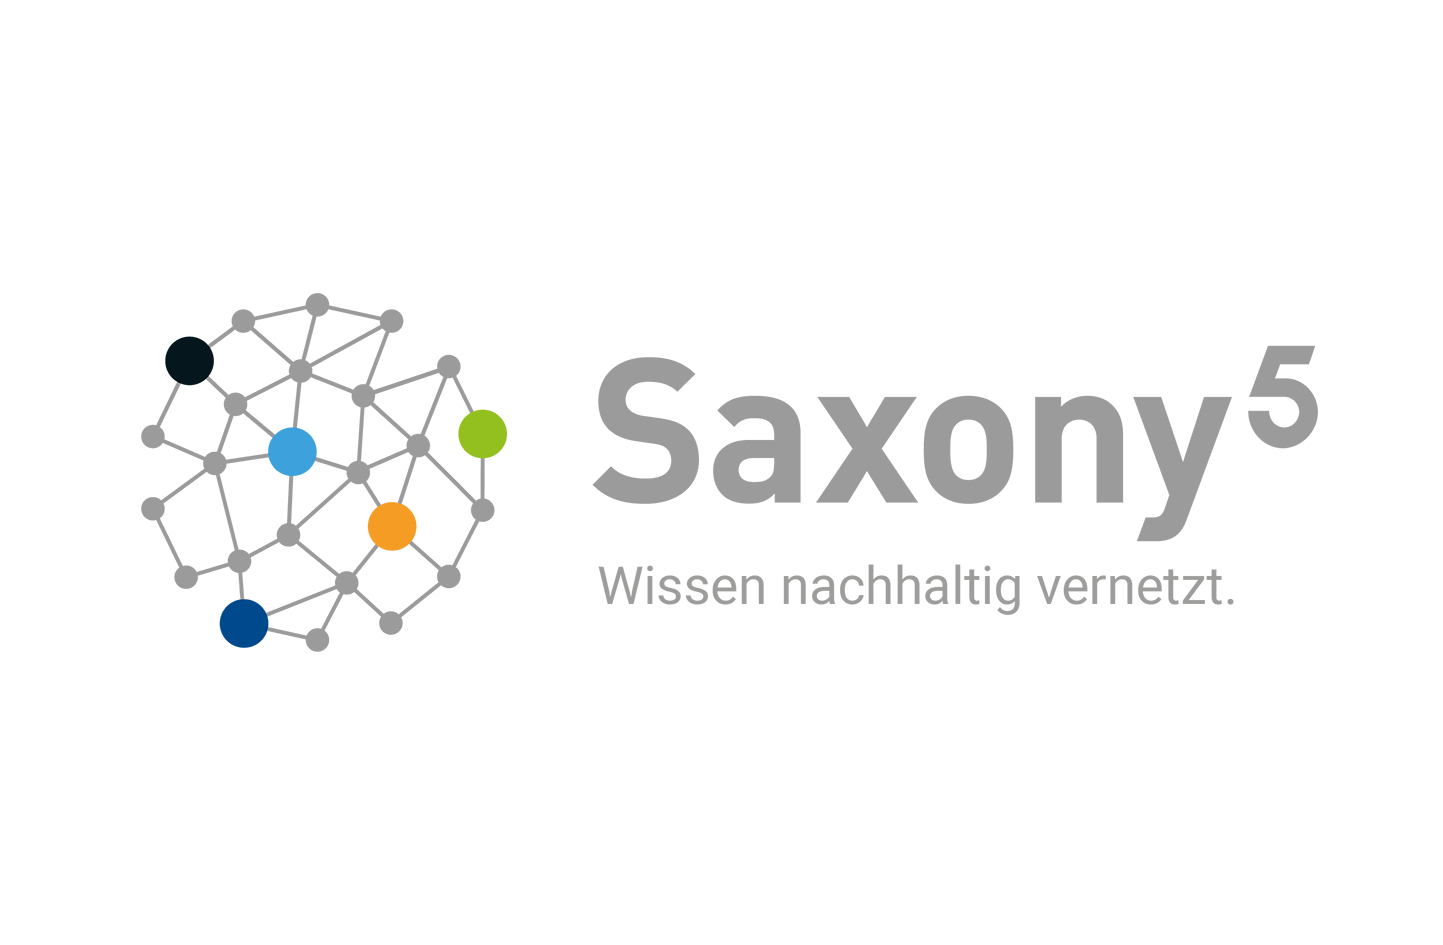 Logo Saxony 5